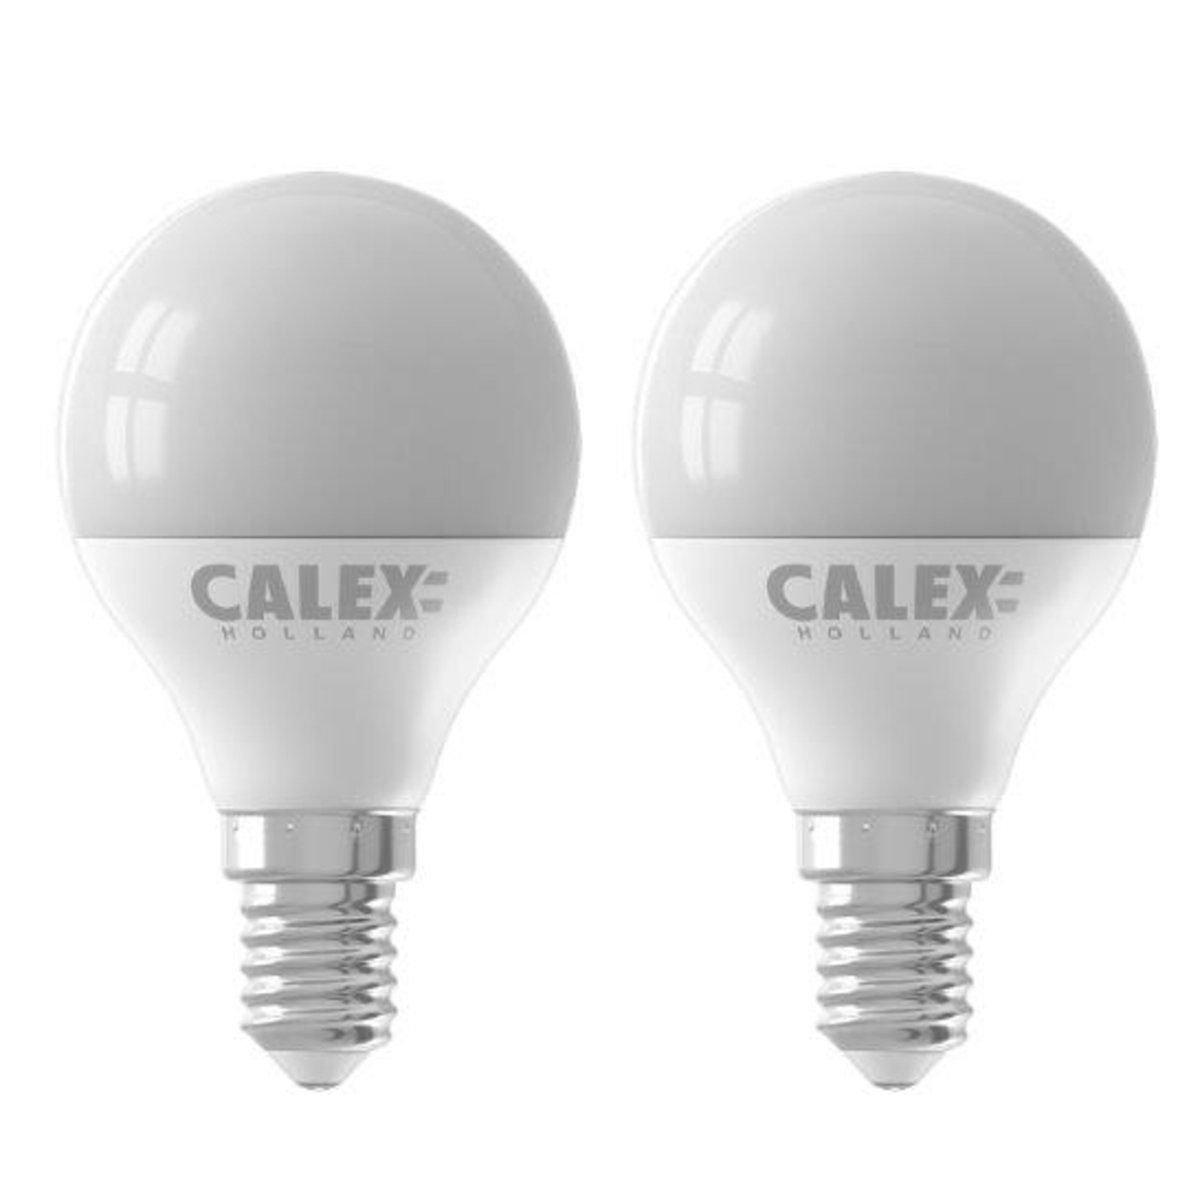 Éclairez votre maison avec les ampoules LED GU10 7W - Pack de 10 à